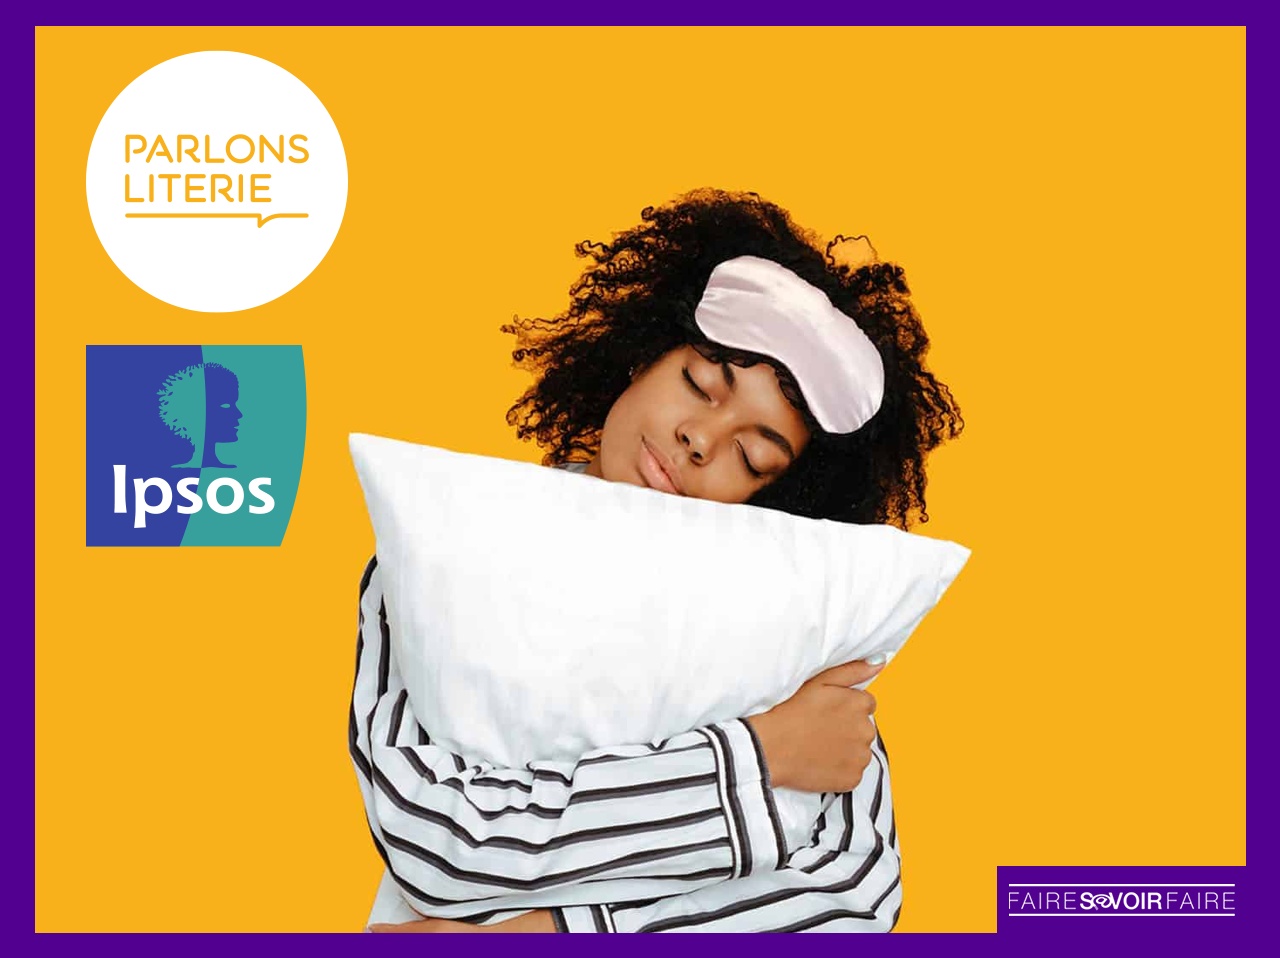 Pour les Français, la literie est le facteur principal de qualité du sommeil selon IPSOS et Parlons Literie